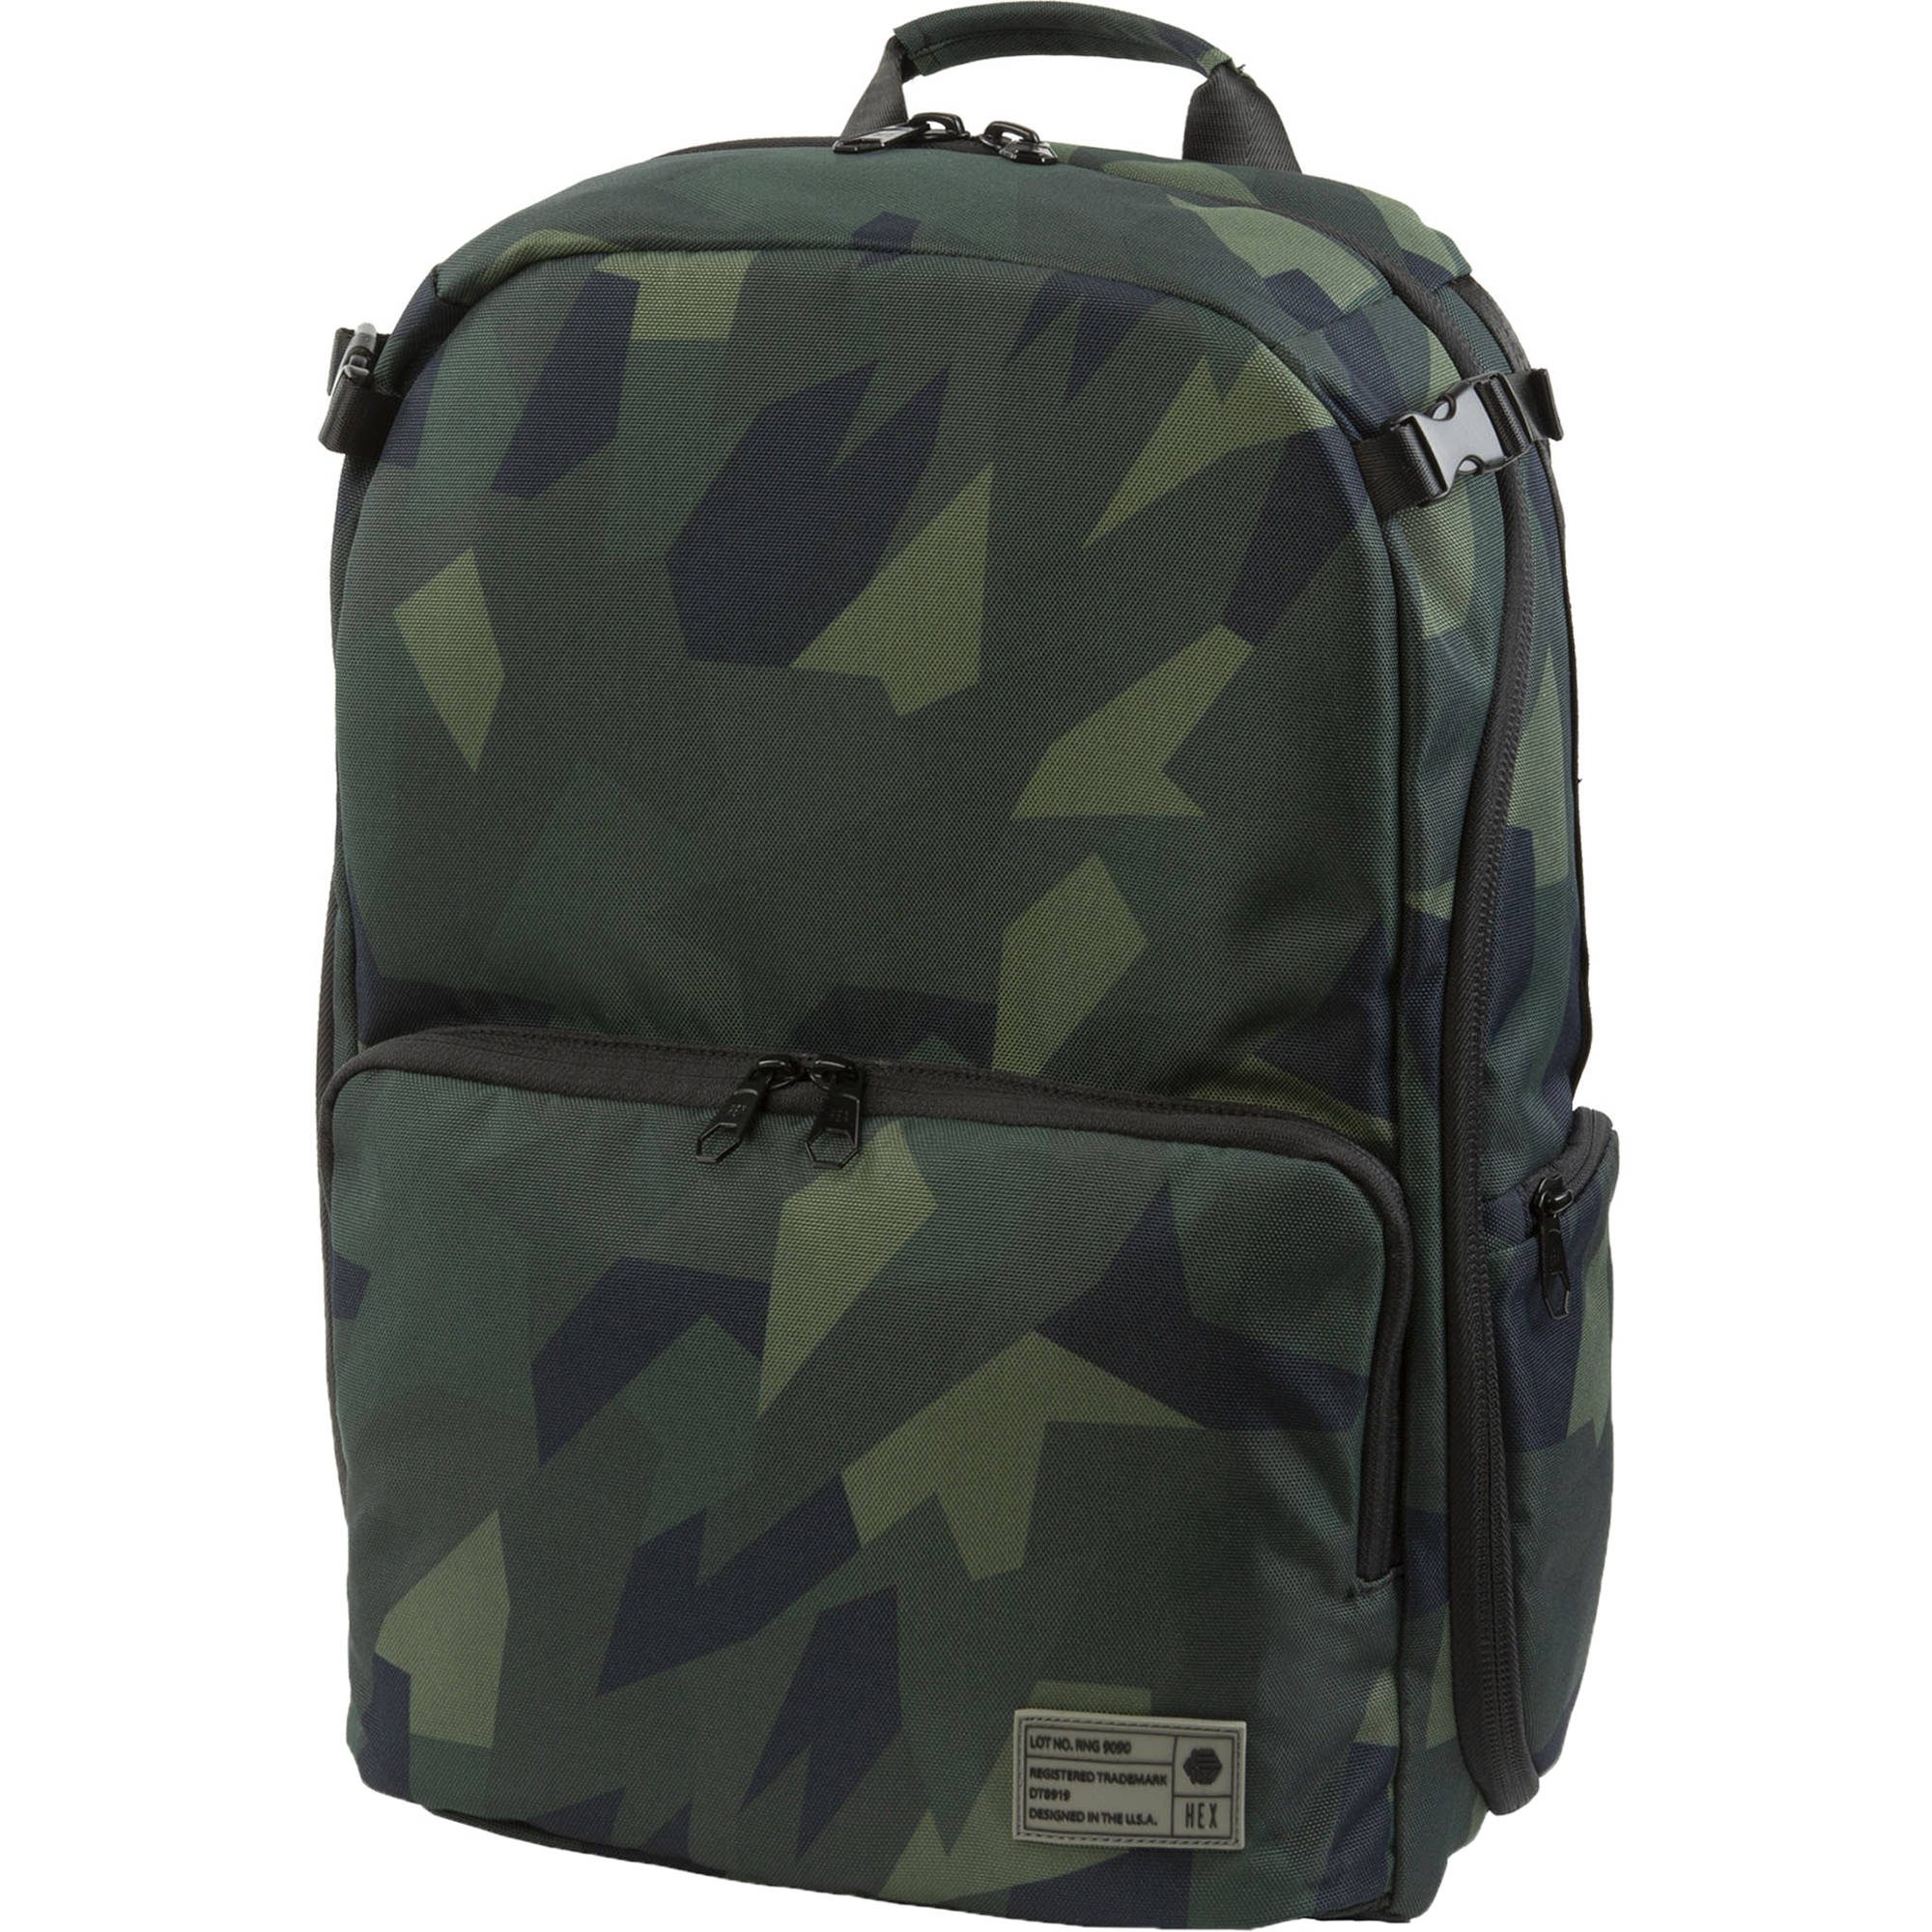 dslr backpack